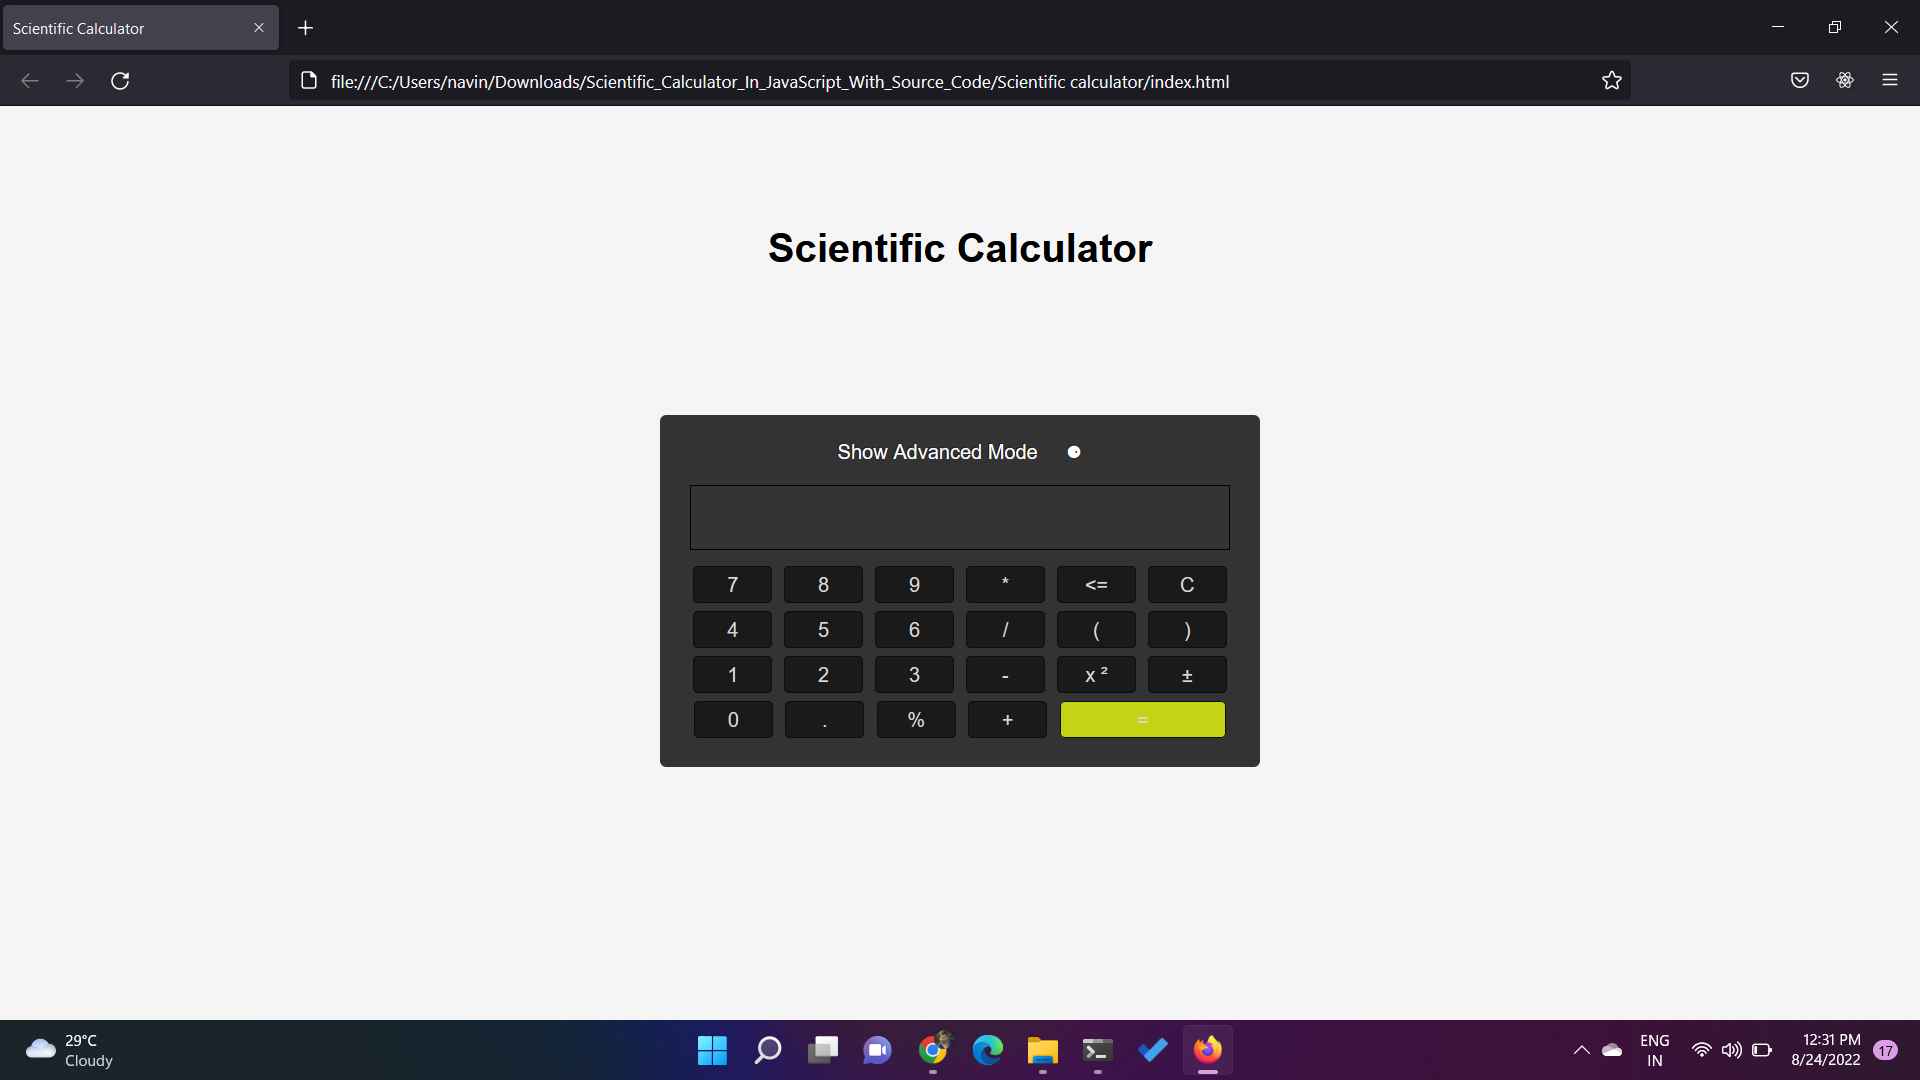 Scientific calculator project in JavaScript 